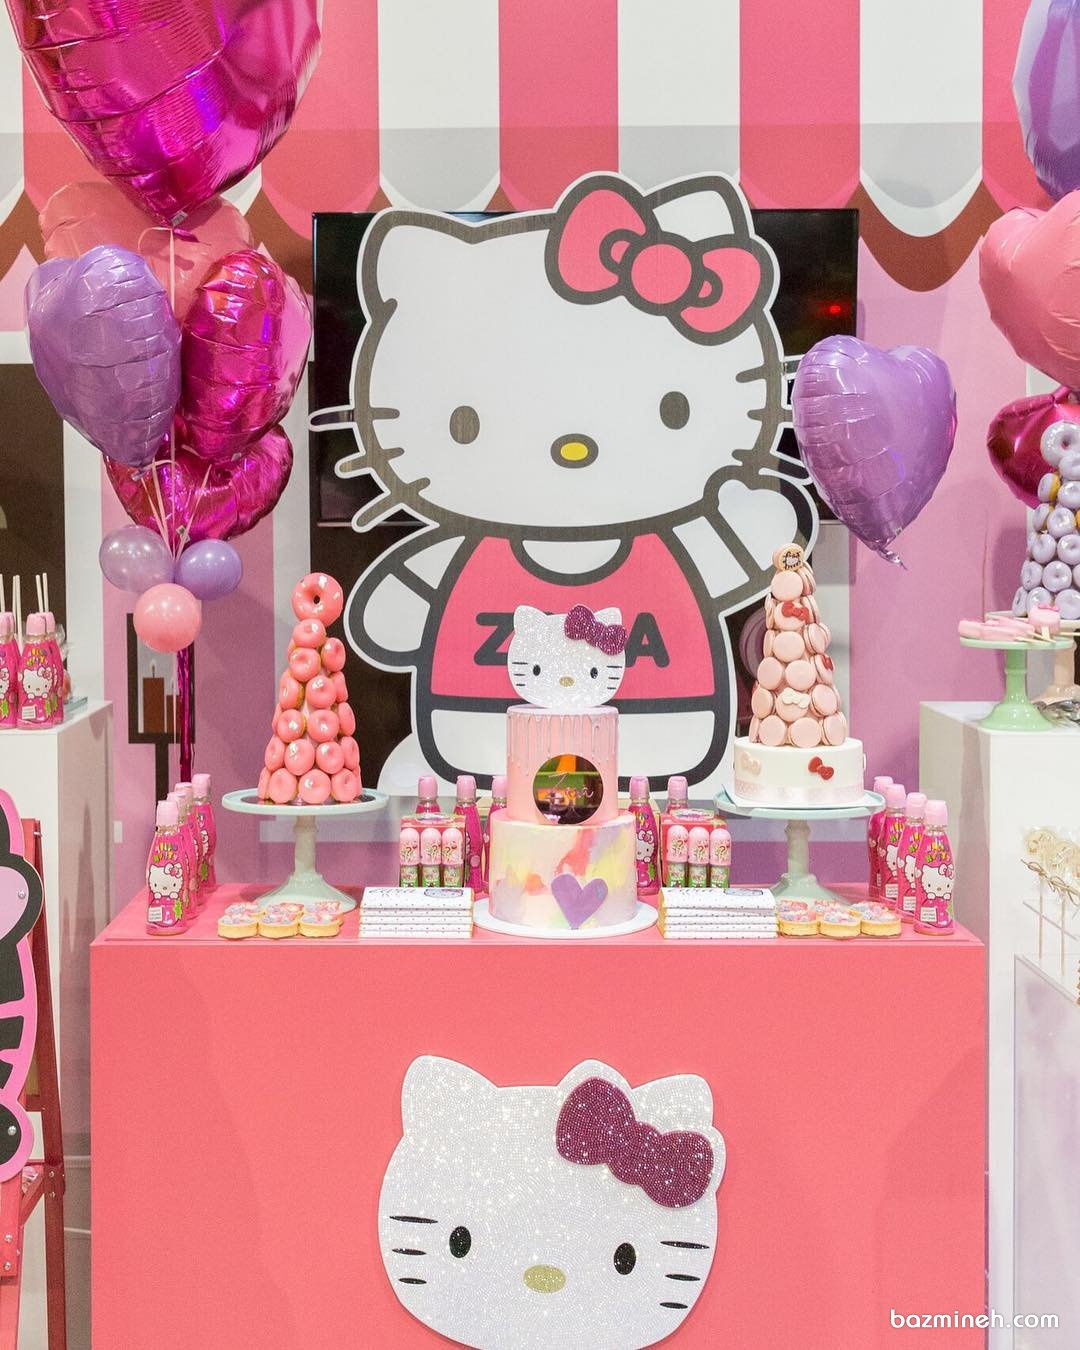 دکوراسیون و بادکنک آرایی جشن تولد دخترونه با تم هلو کیتی (Hello Kitty)